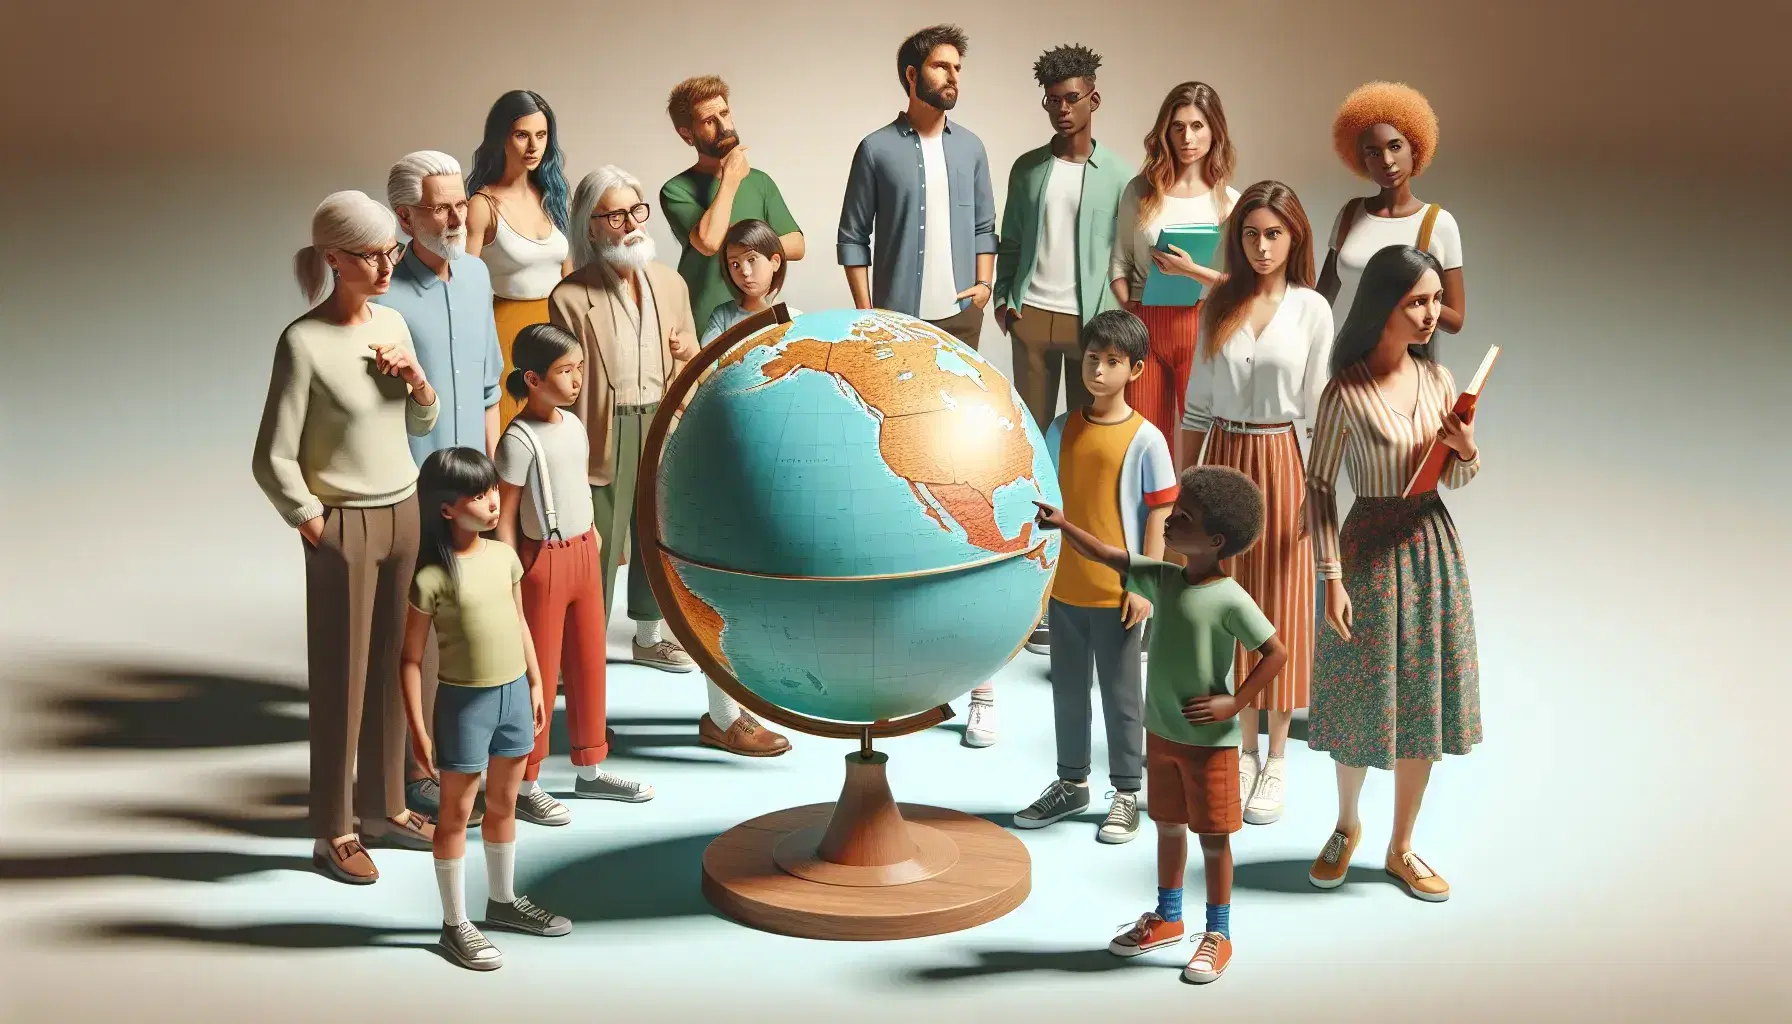 Grupo diverso de personas de diferentes edades señalando un globo terráqueo en un aula, reflejando interés y aprendizaje sobre geografía mundial.